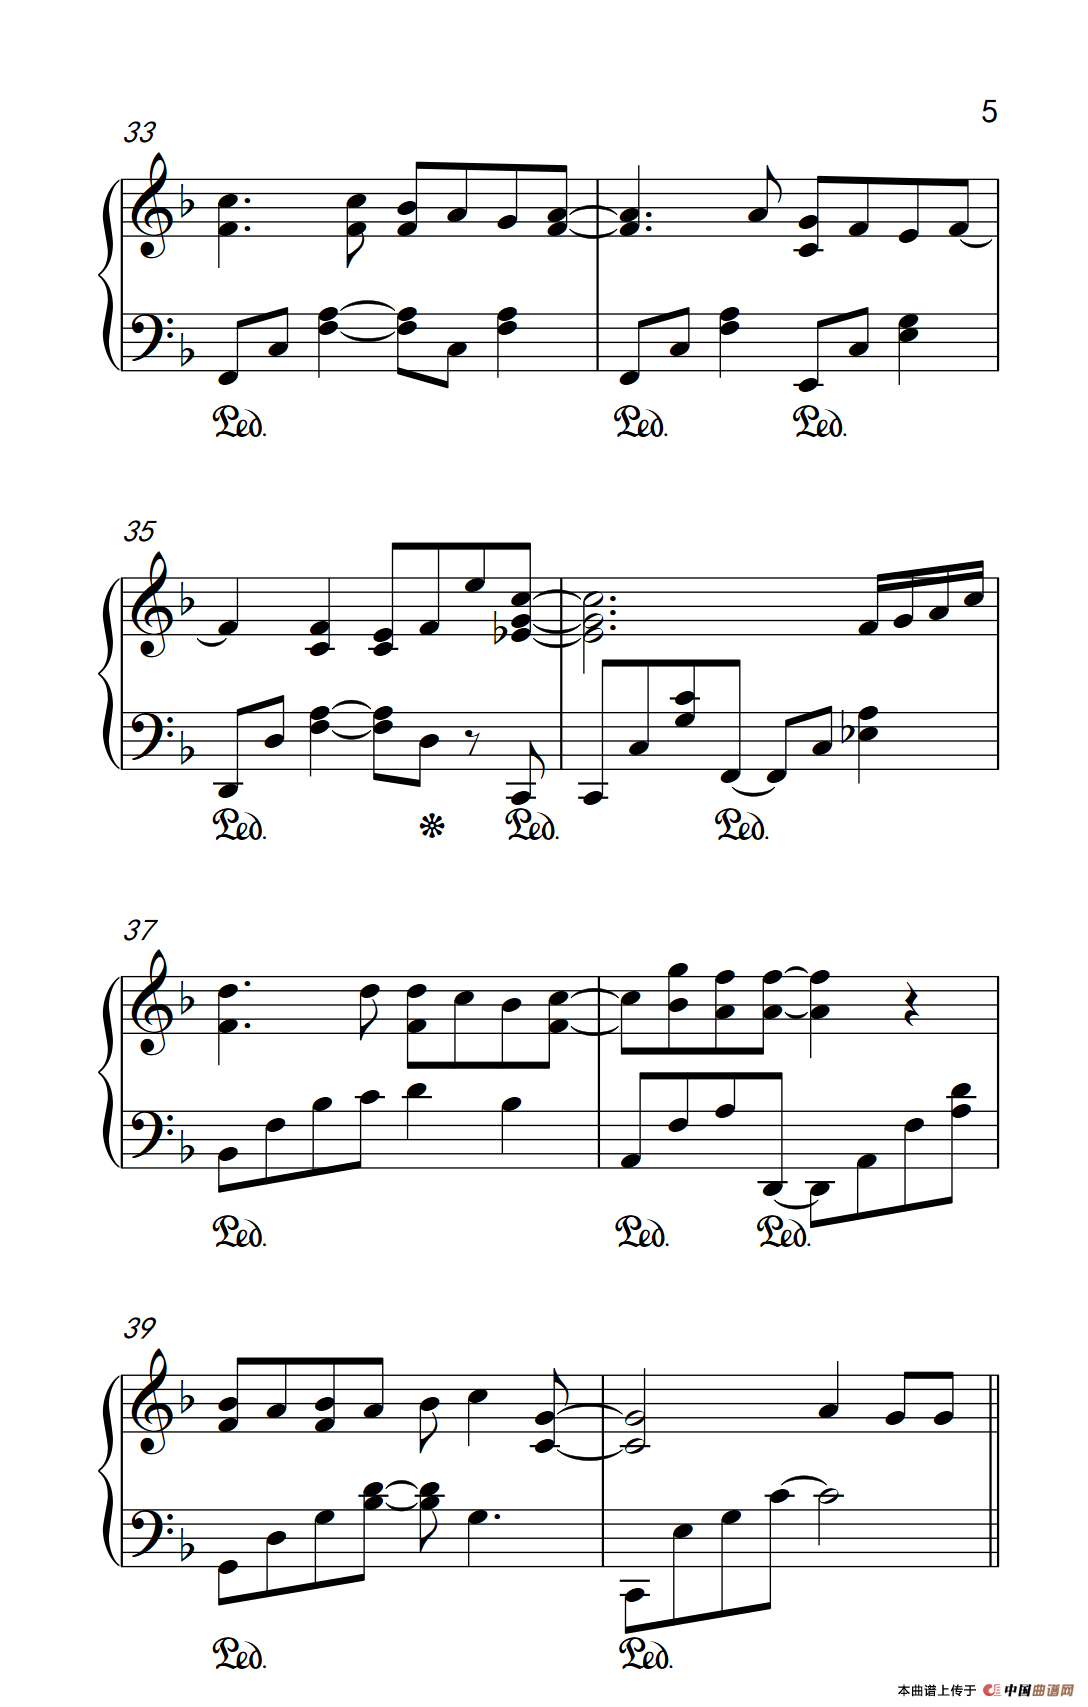 《幸运符号》钢琴曲谱图分享